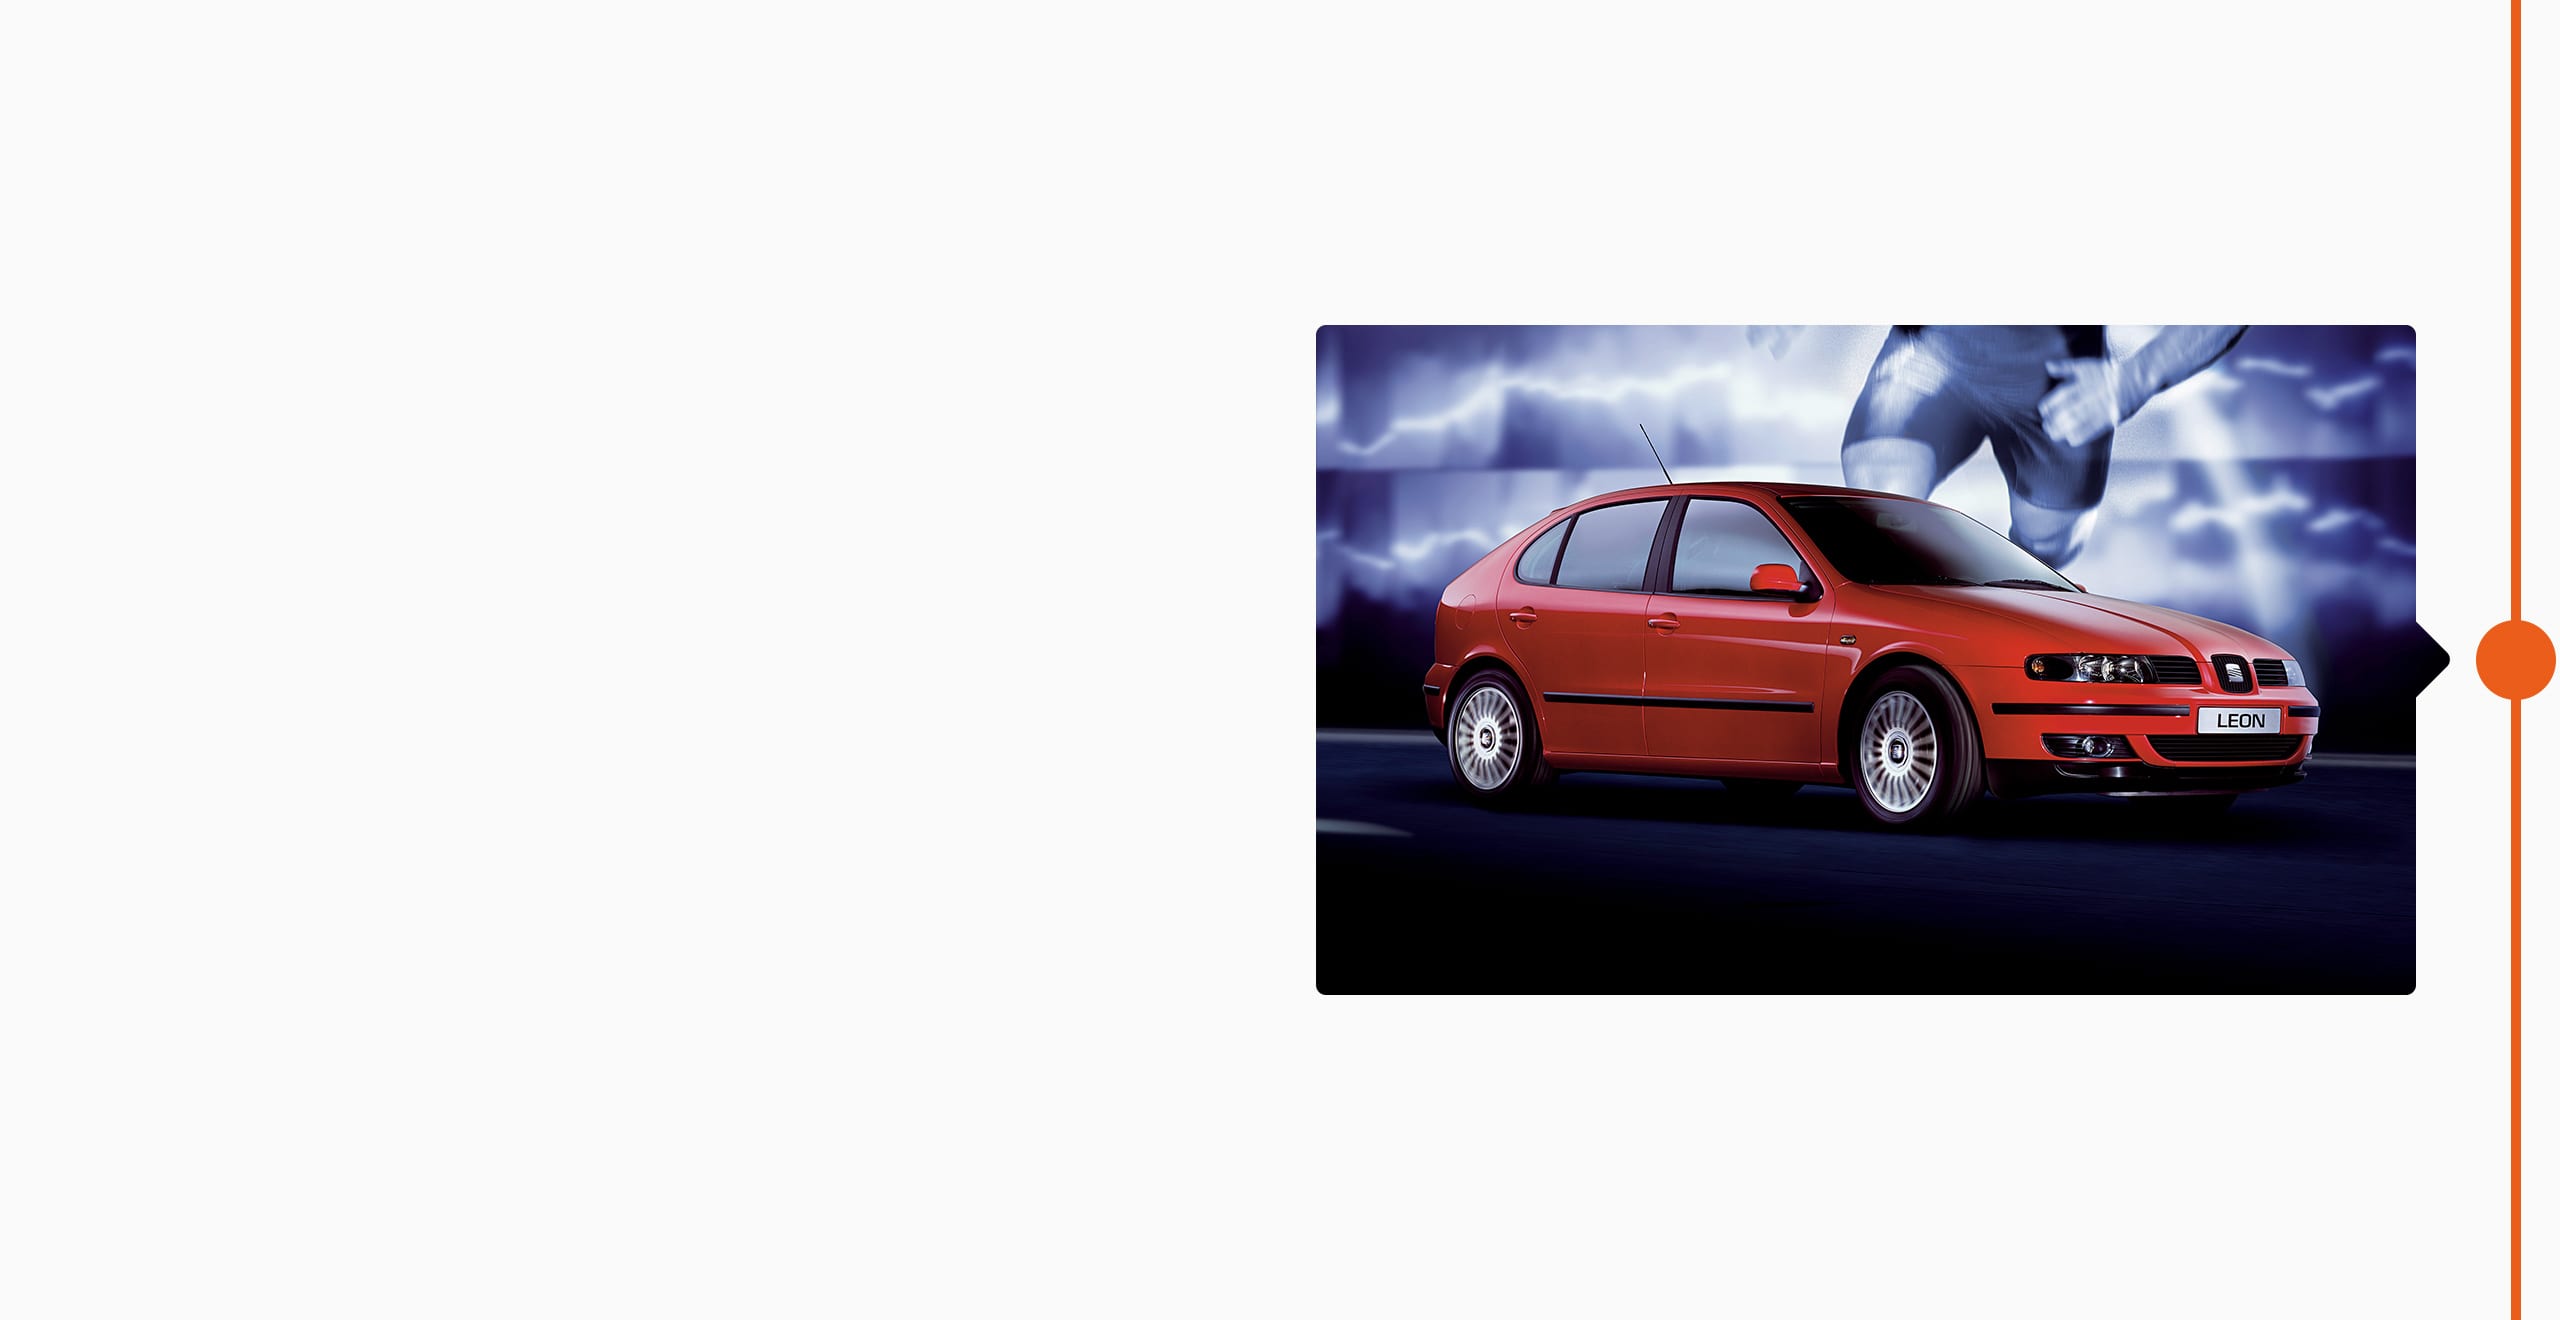 Vista lateral del SEAT León de 1999 en color rojo